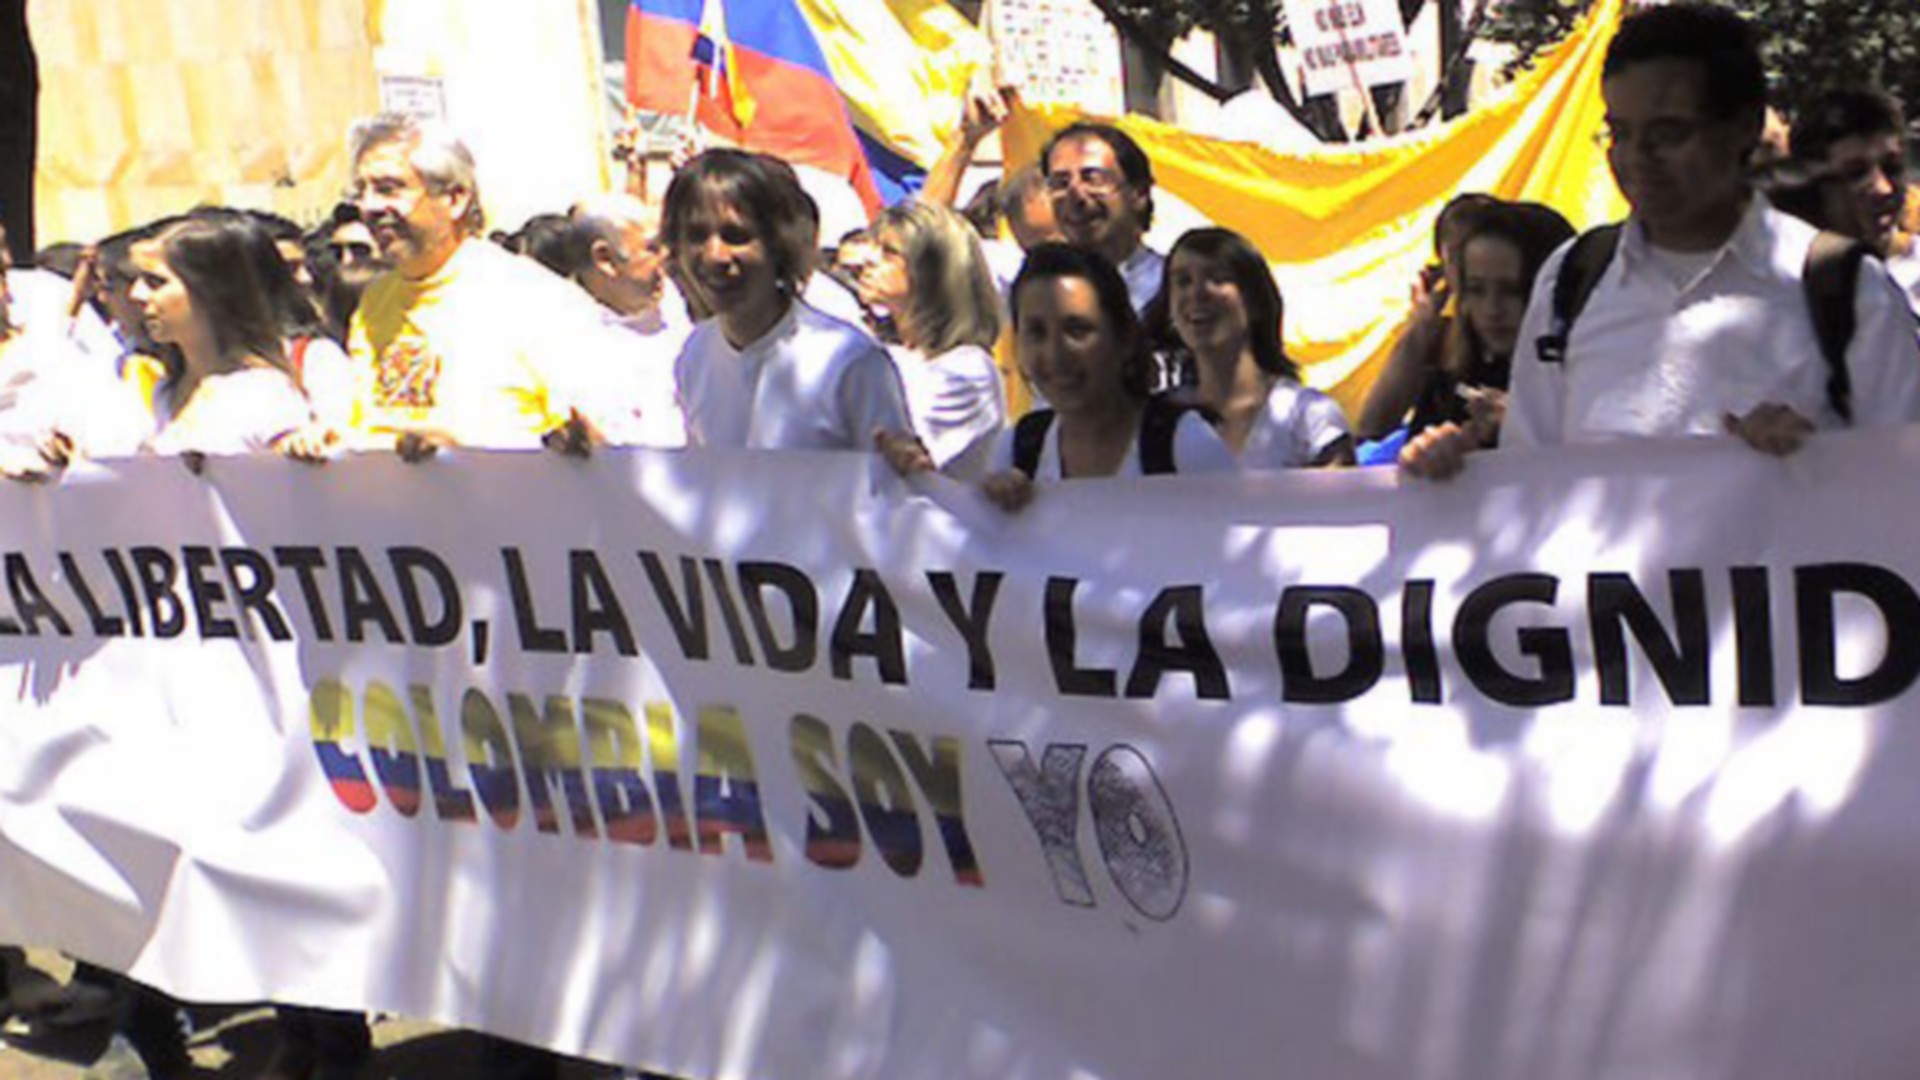 Marche de protestation contre les FARC,"pour la liberté, la vie et la dignité" (Photo: German Cabrejo/CCBY2.0)